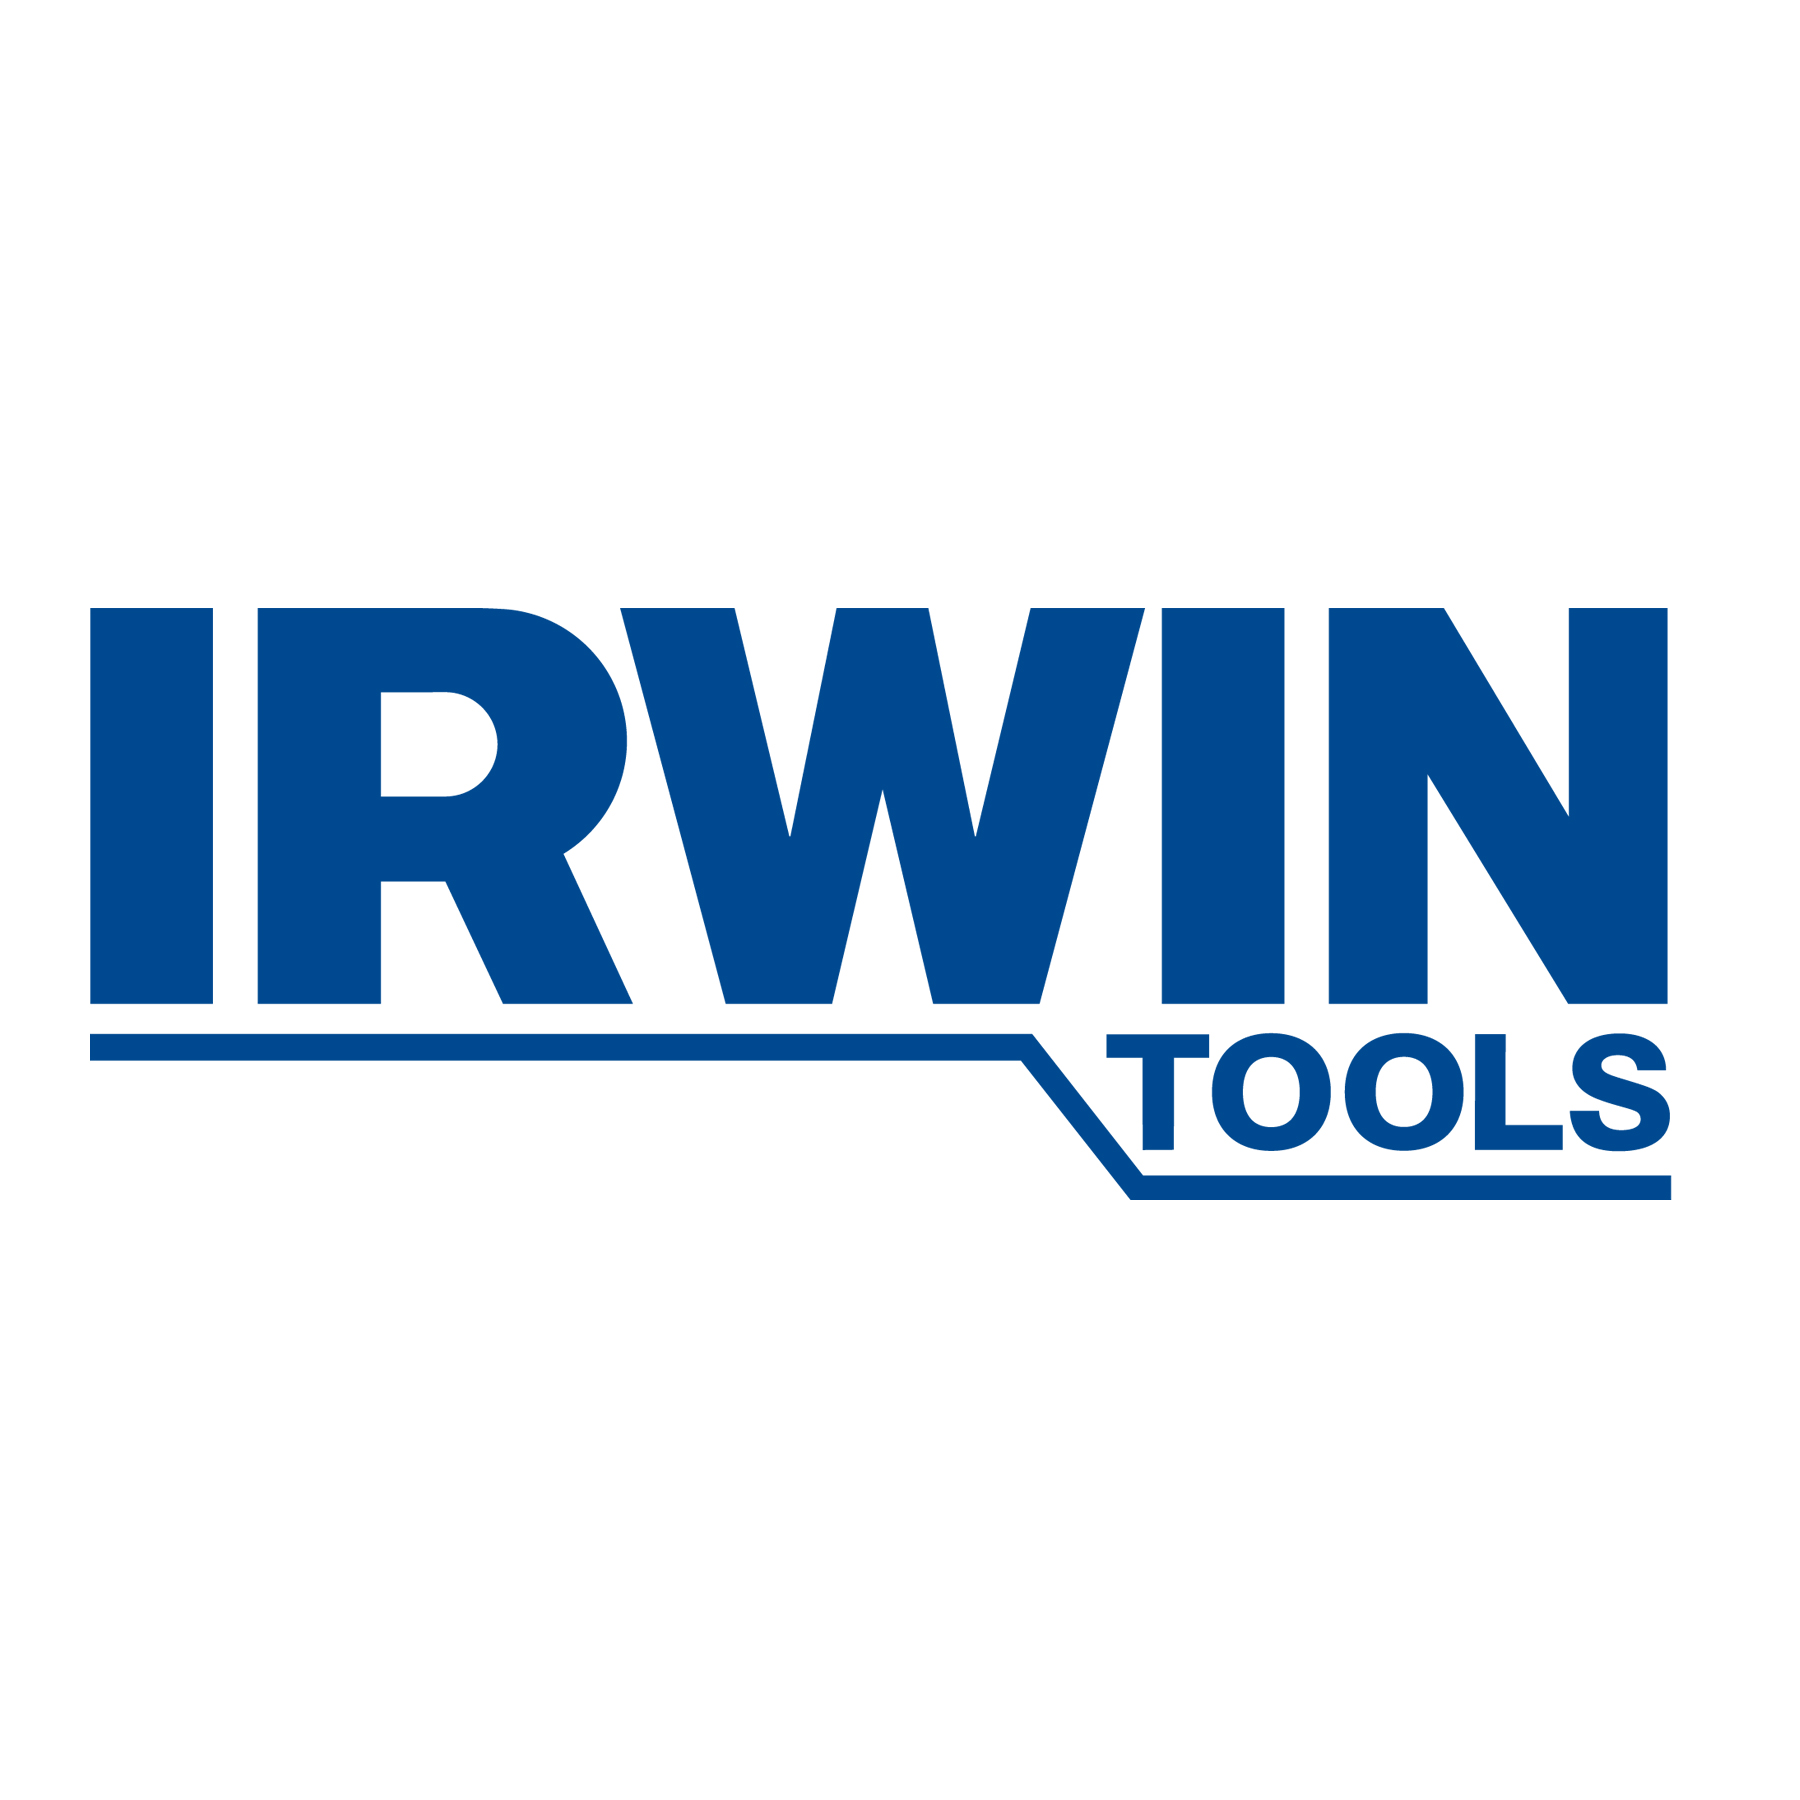 IRWIN-Tools-yellow-original